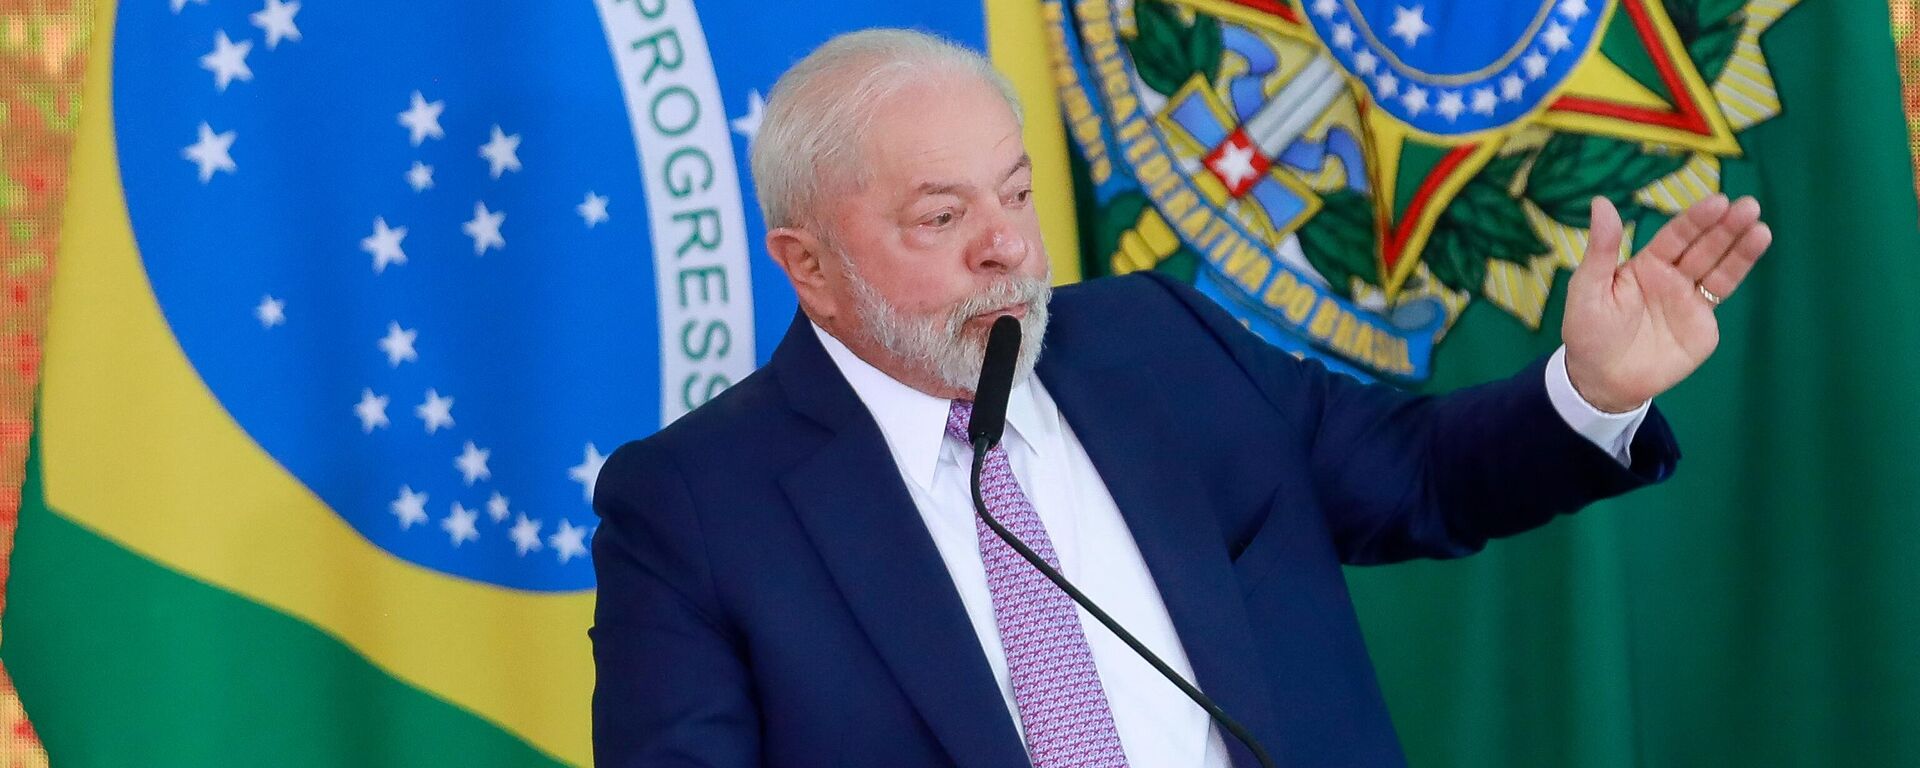 El presidente de Brasil, Lula da Silva, durante un evento en Brasilia, en junio de 2023 - Sputnik Mundo, 1920, 30.06.2023